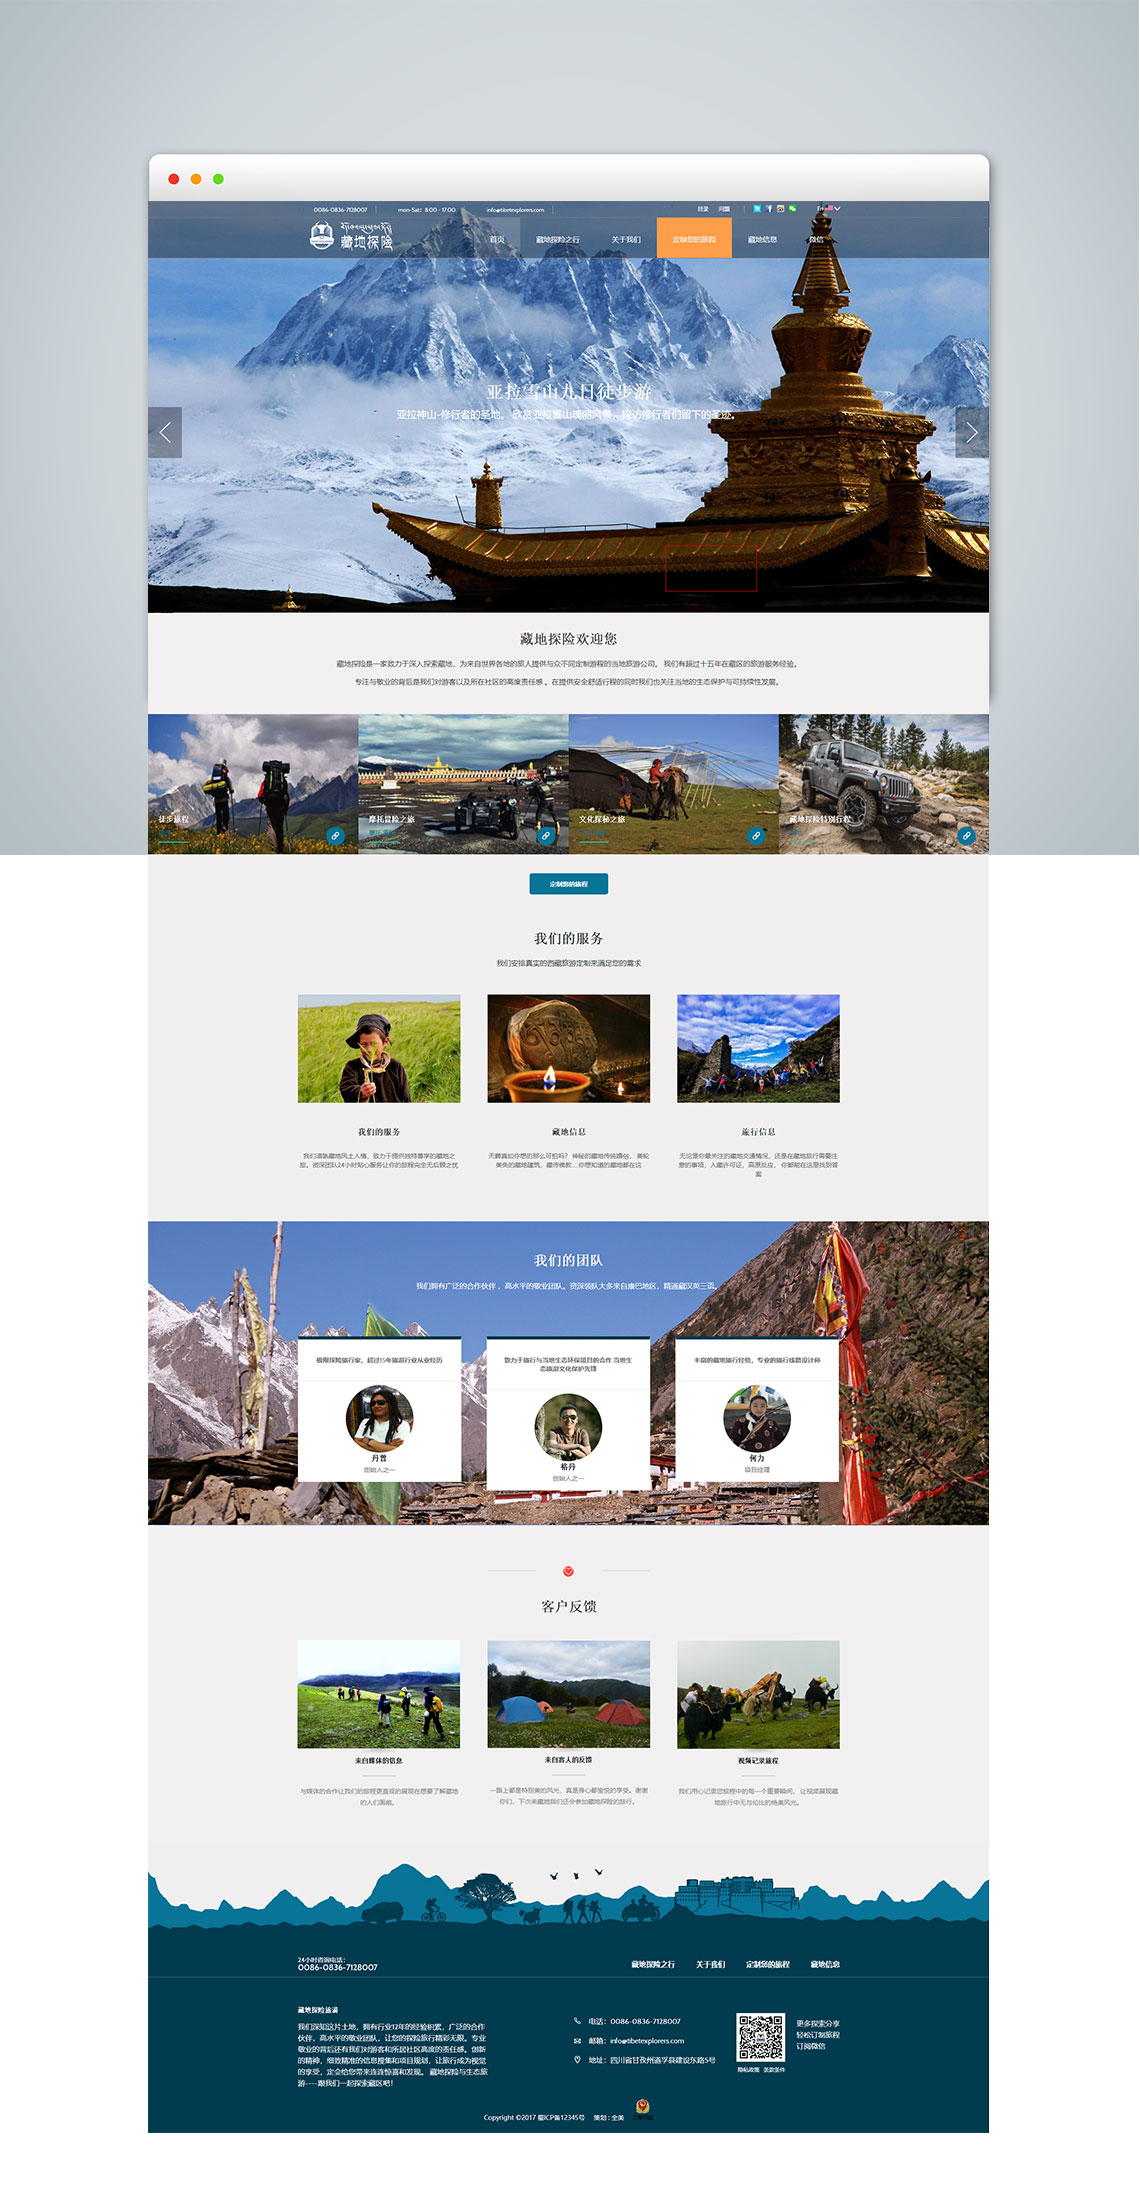 藏地探险旅游-成都网站建设案例分享